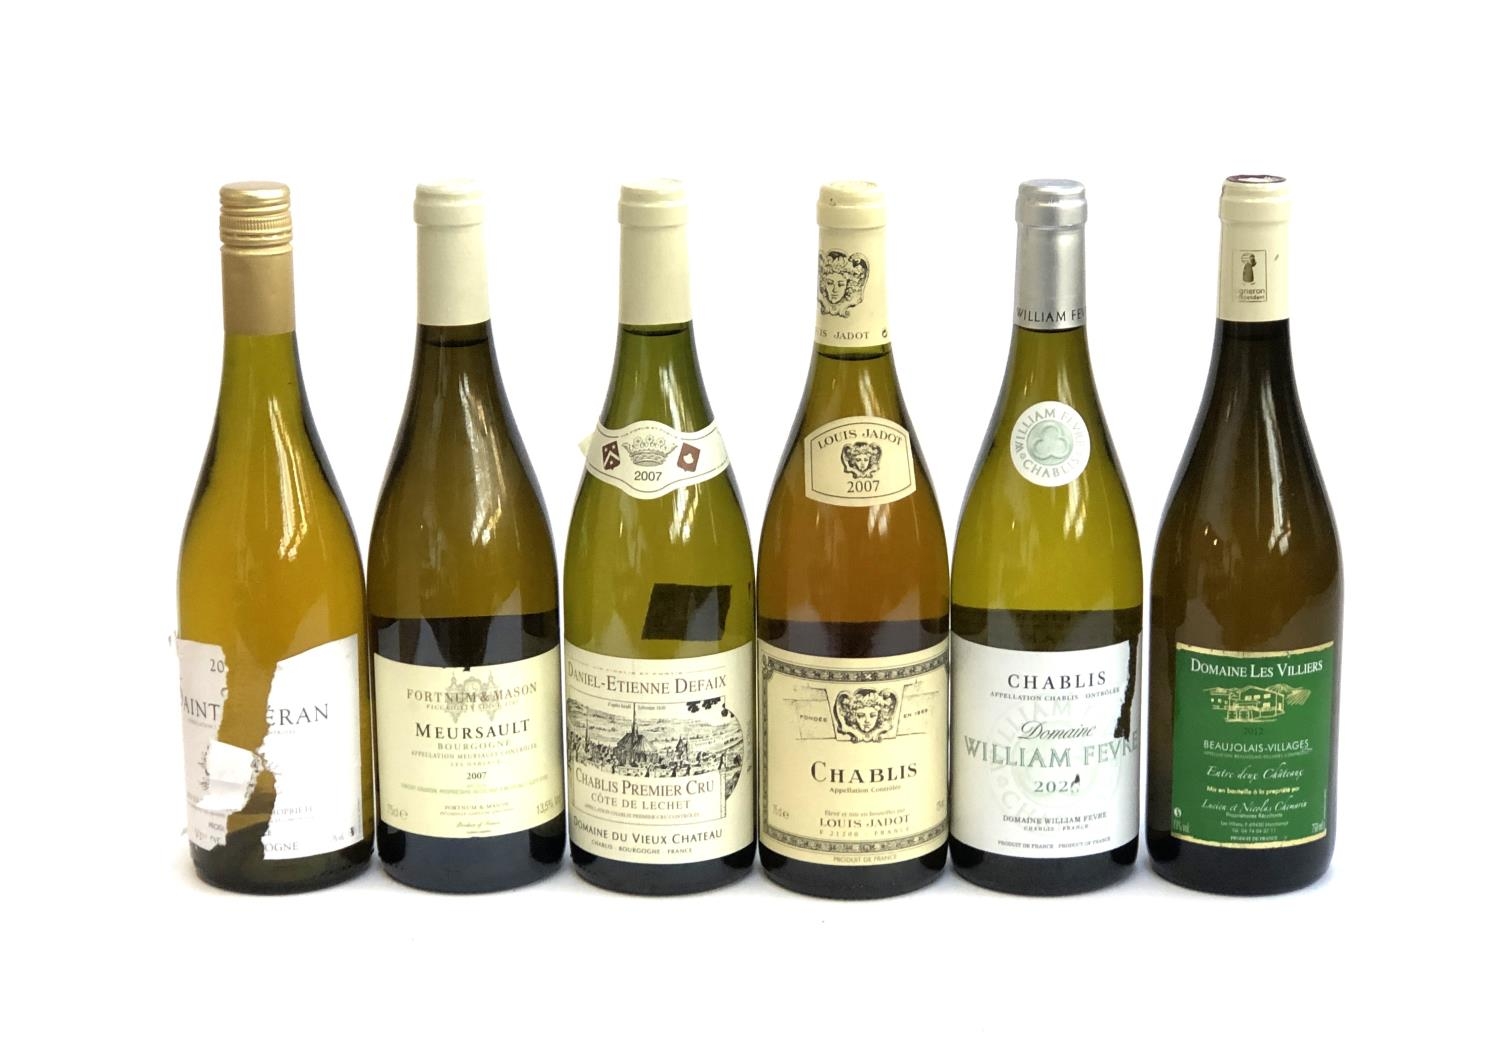 Six bottles of Burgundy: Daniel-Etienne Defaix 2007 Chablis premier cru 13%/75cl; William Fevre